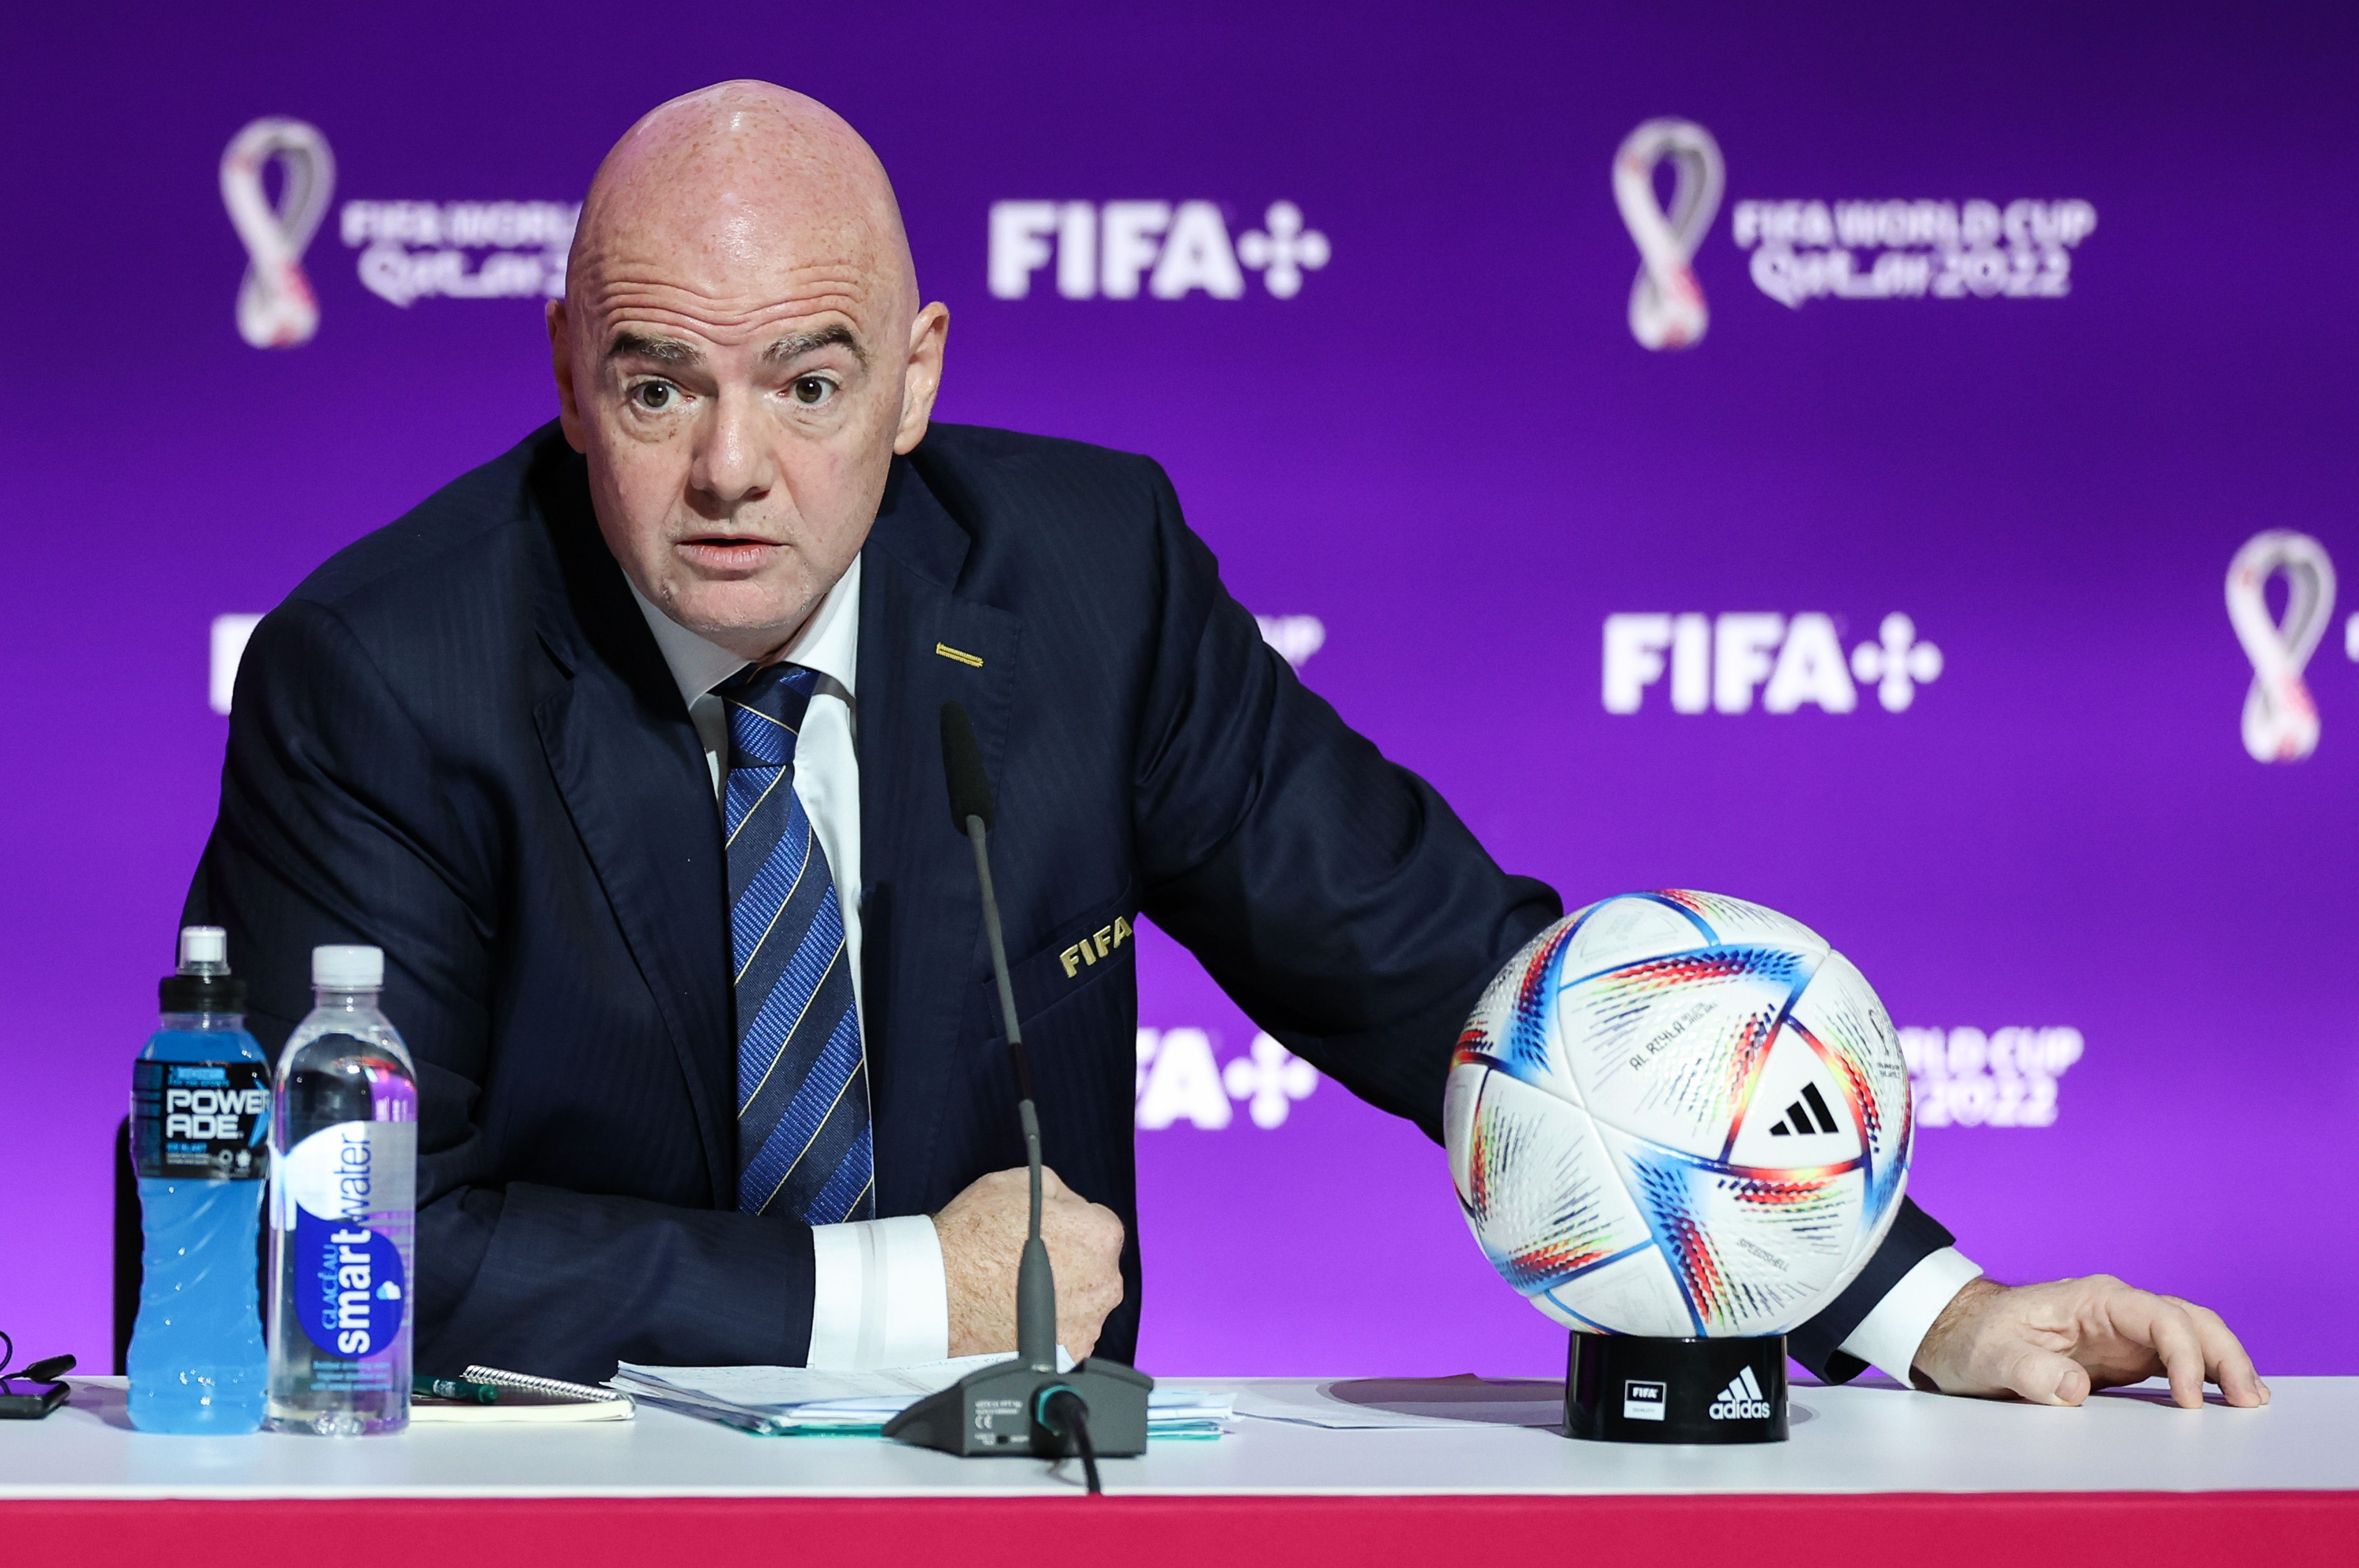 La FIFA decide repetir la final del mundial de Qatar al descubrir amaño arbitral.